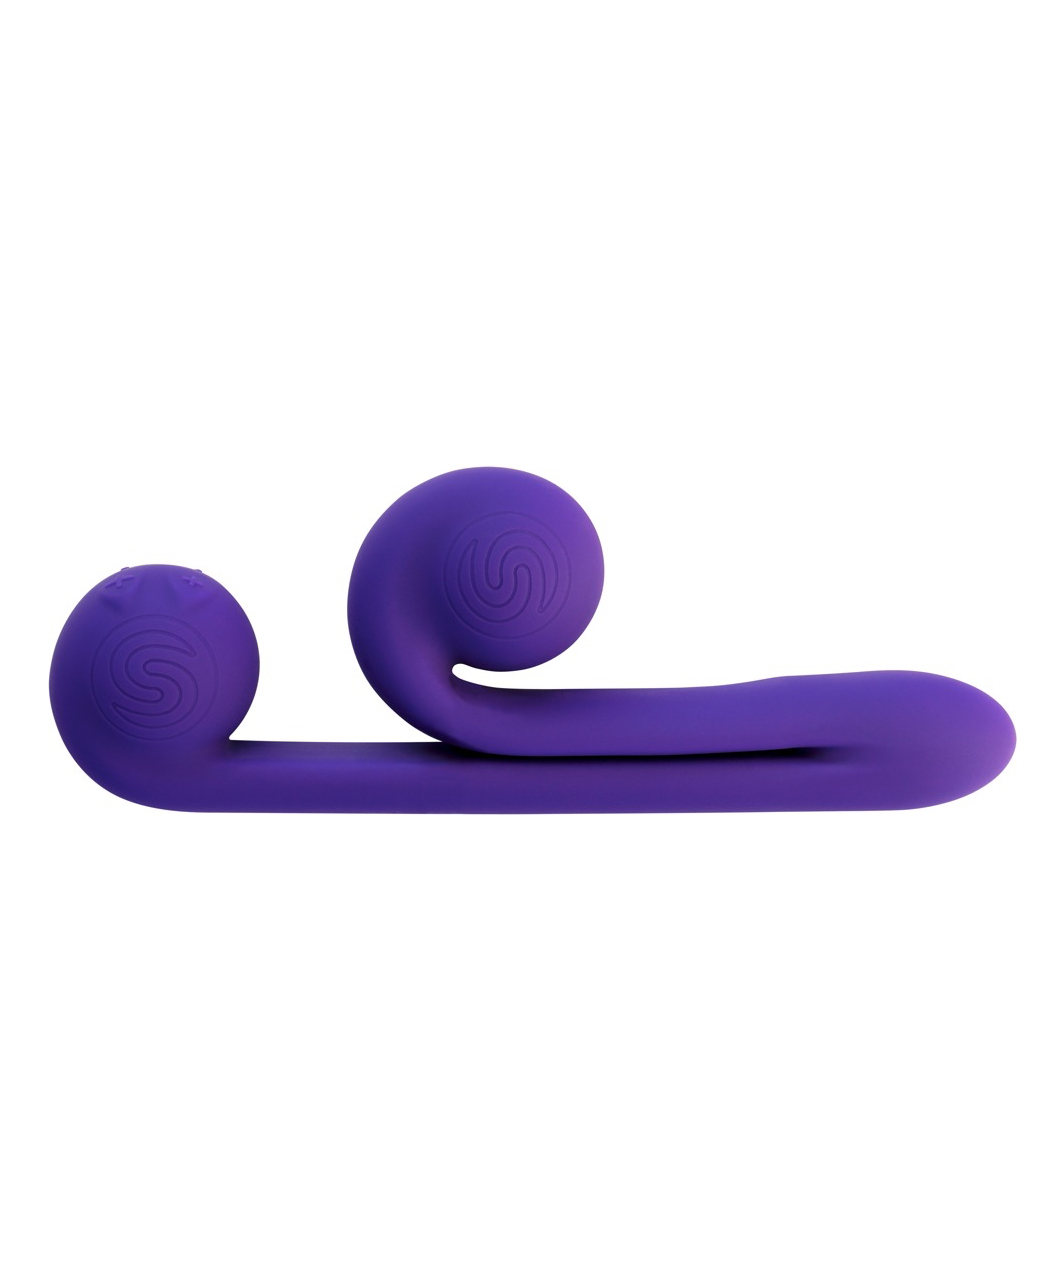 Snail Vibe Slide'n'Roll Dual vibrators